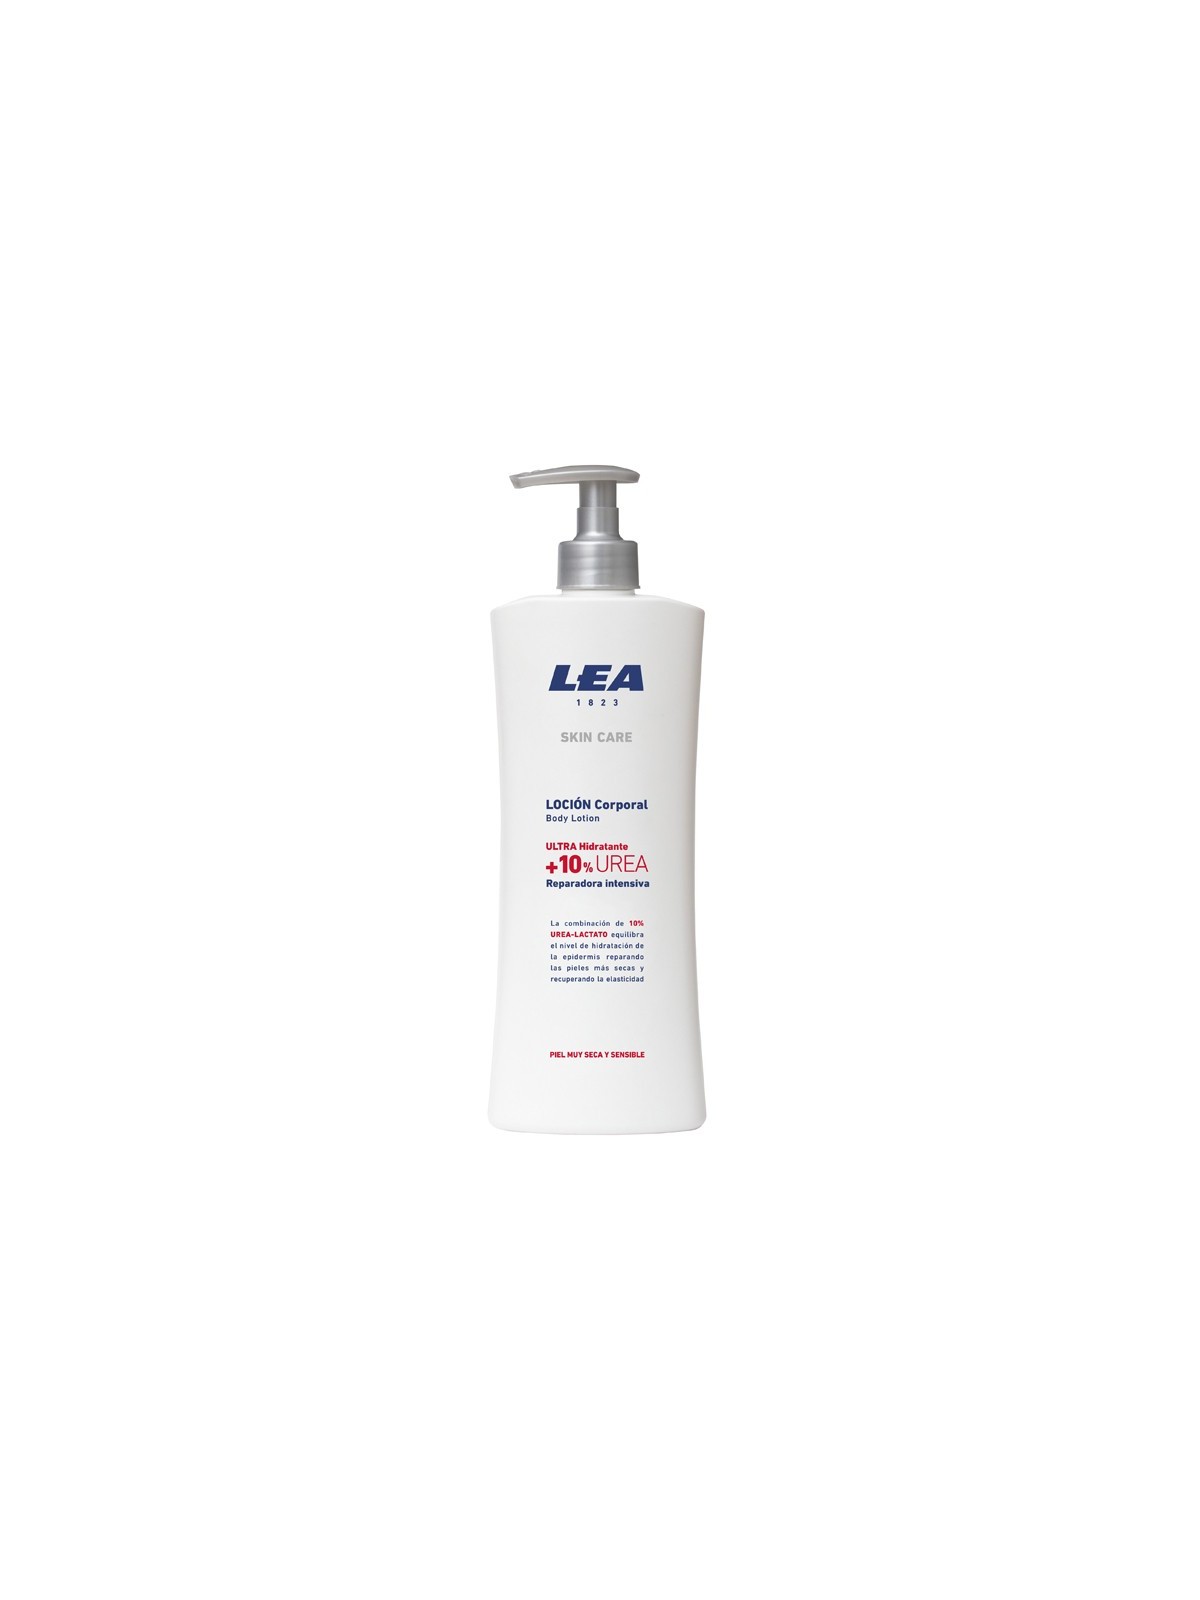 Comprar LEA skin care loción corporal con 10% urea-lactato 400ml. en Inicio por sólo 4,50 € o un precio específico de 4,50 € en Thalie Care